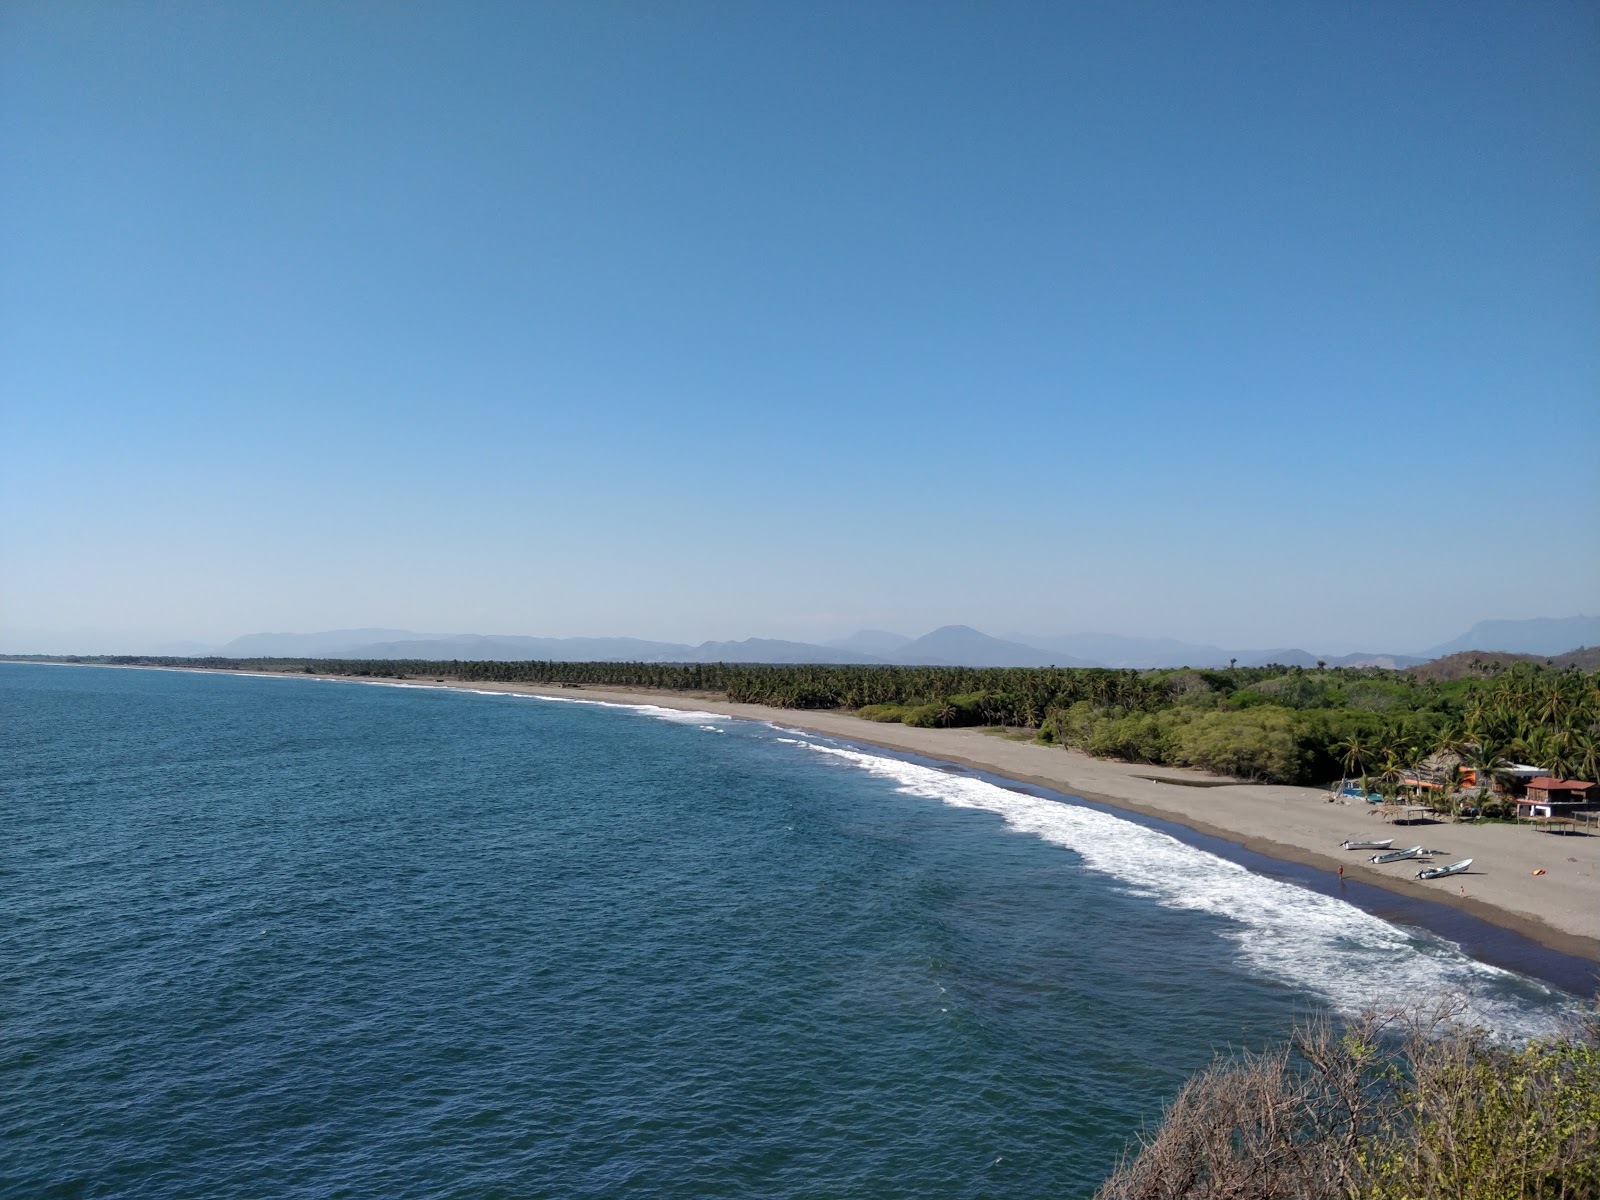 Fotografie cu Playa de San Telmo cu o suprafață de apa pură turcoaz